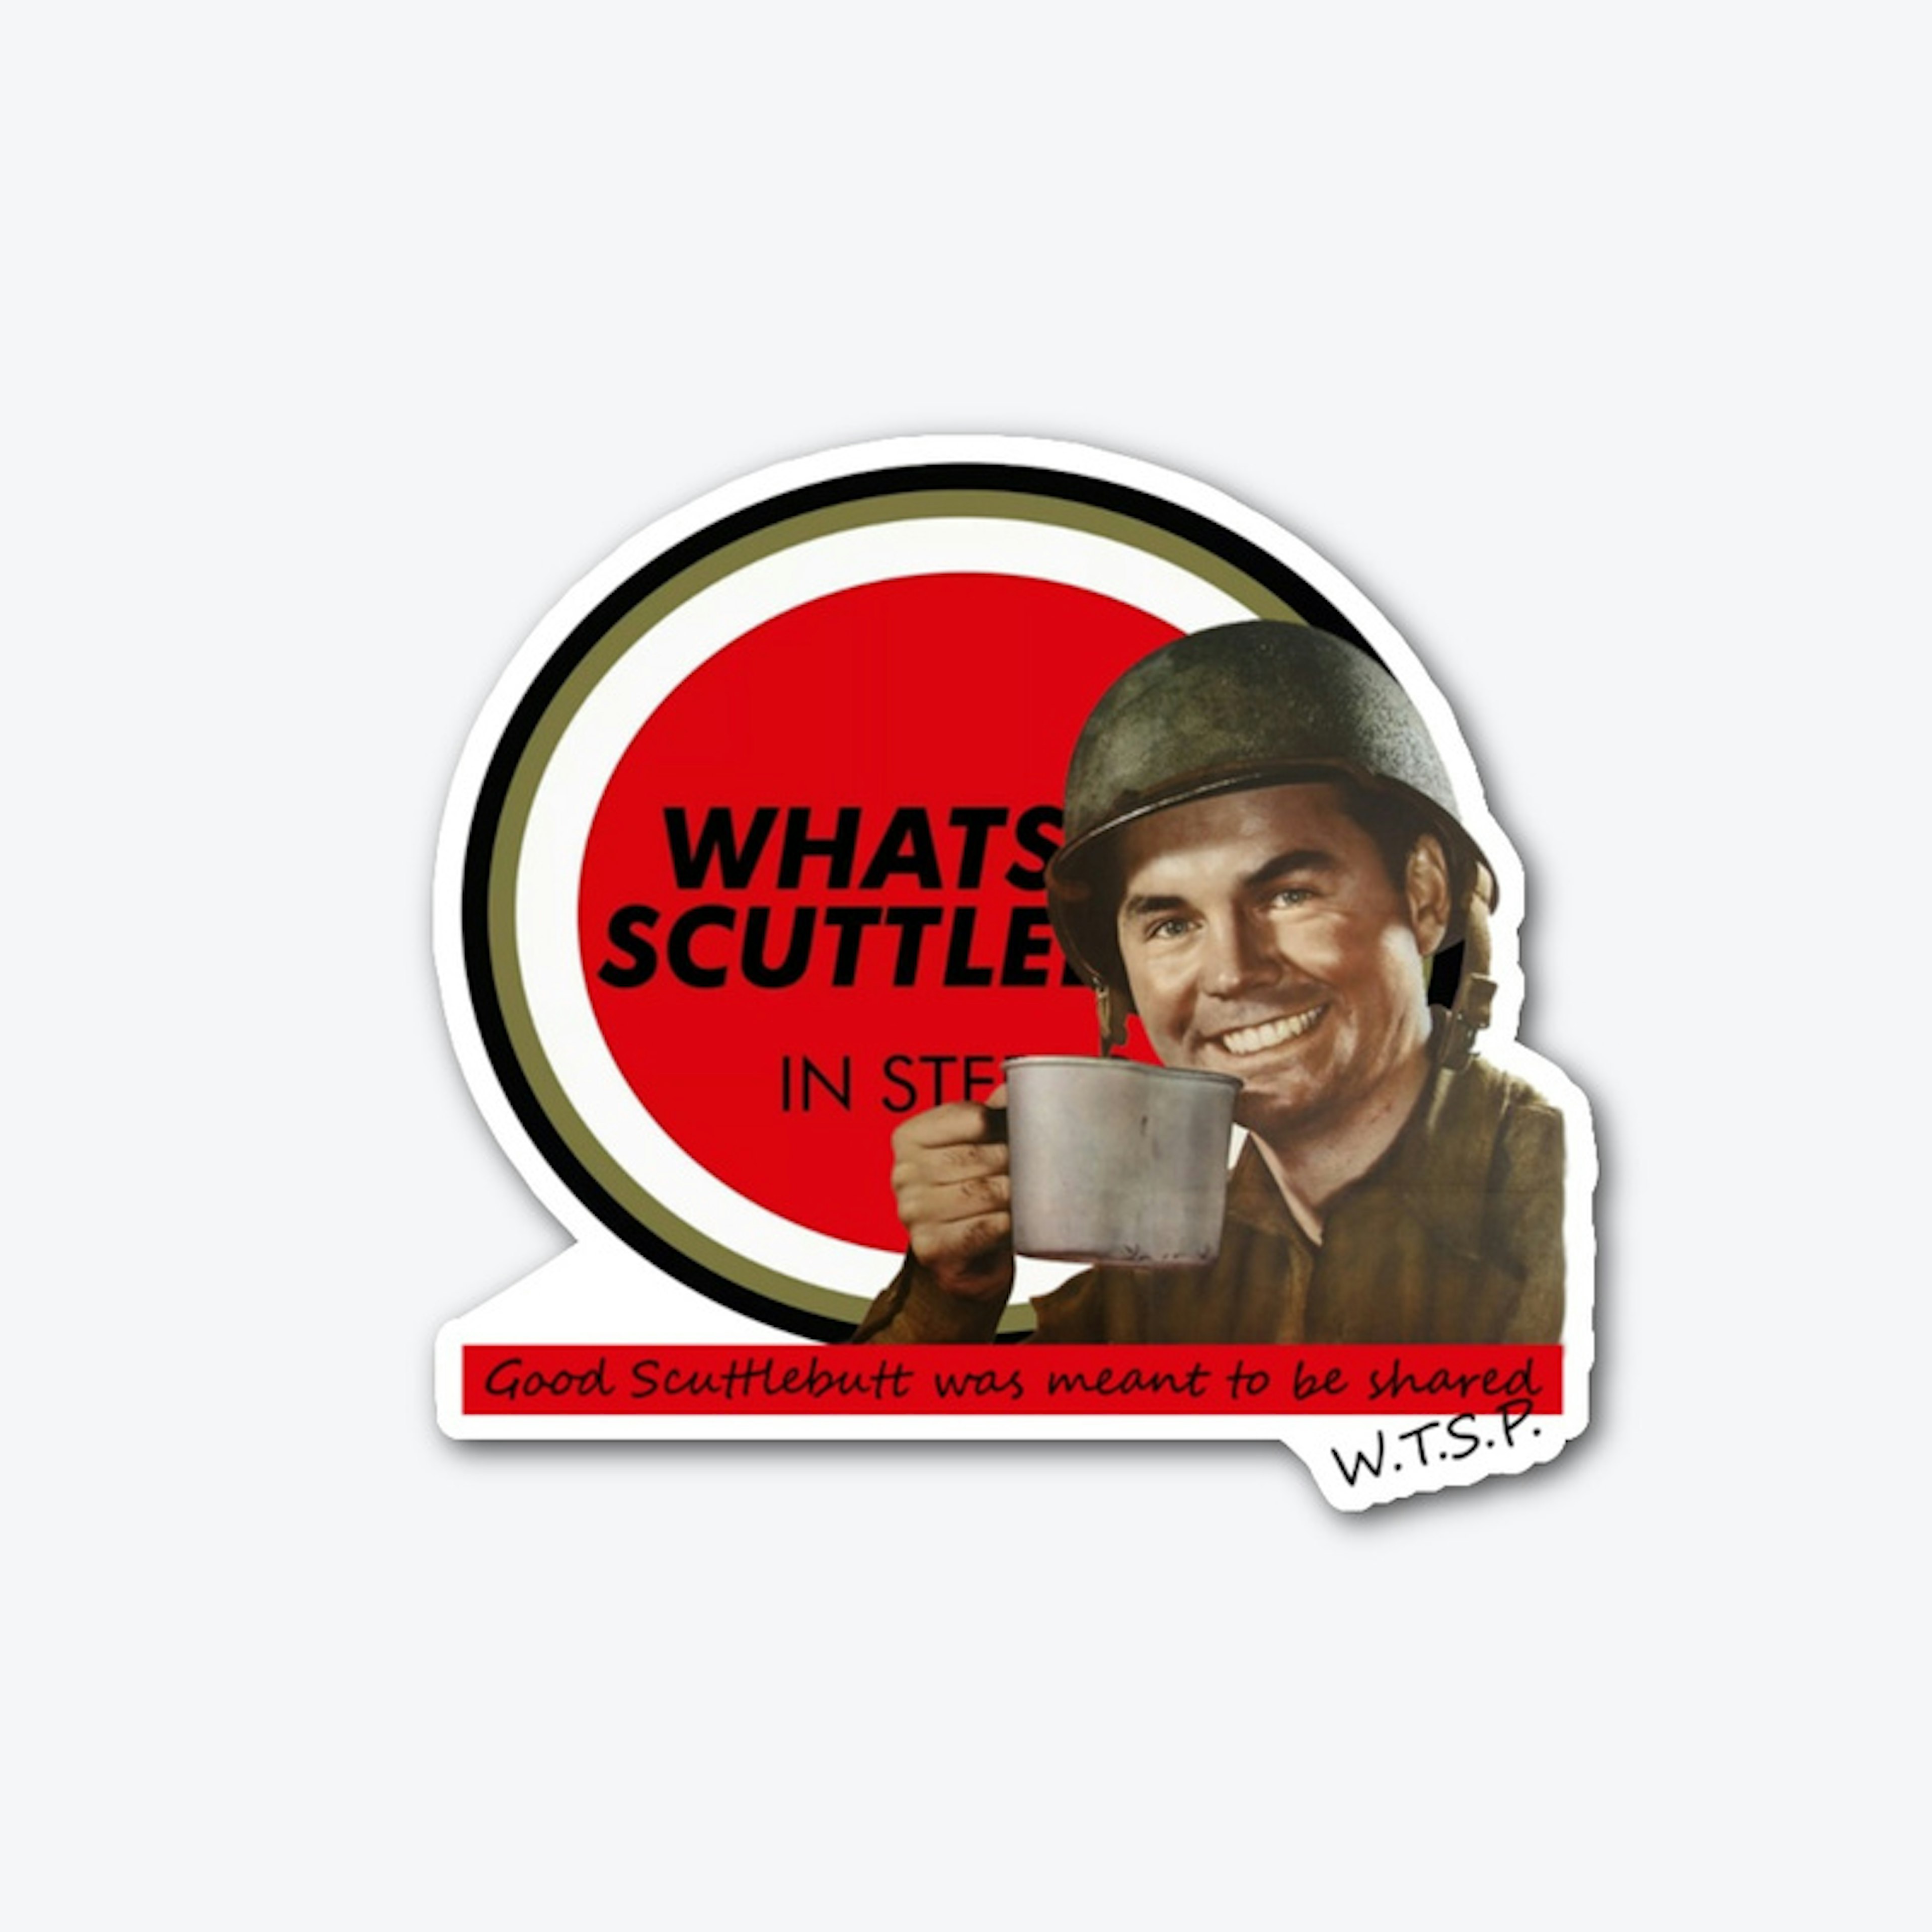 Share The Scuttlebutt 